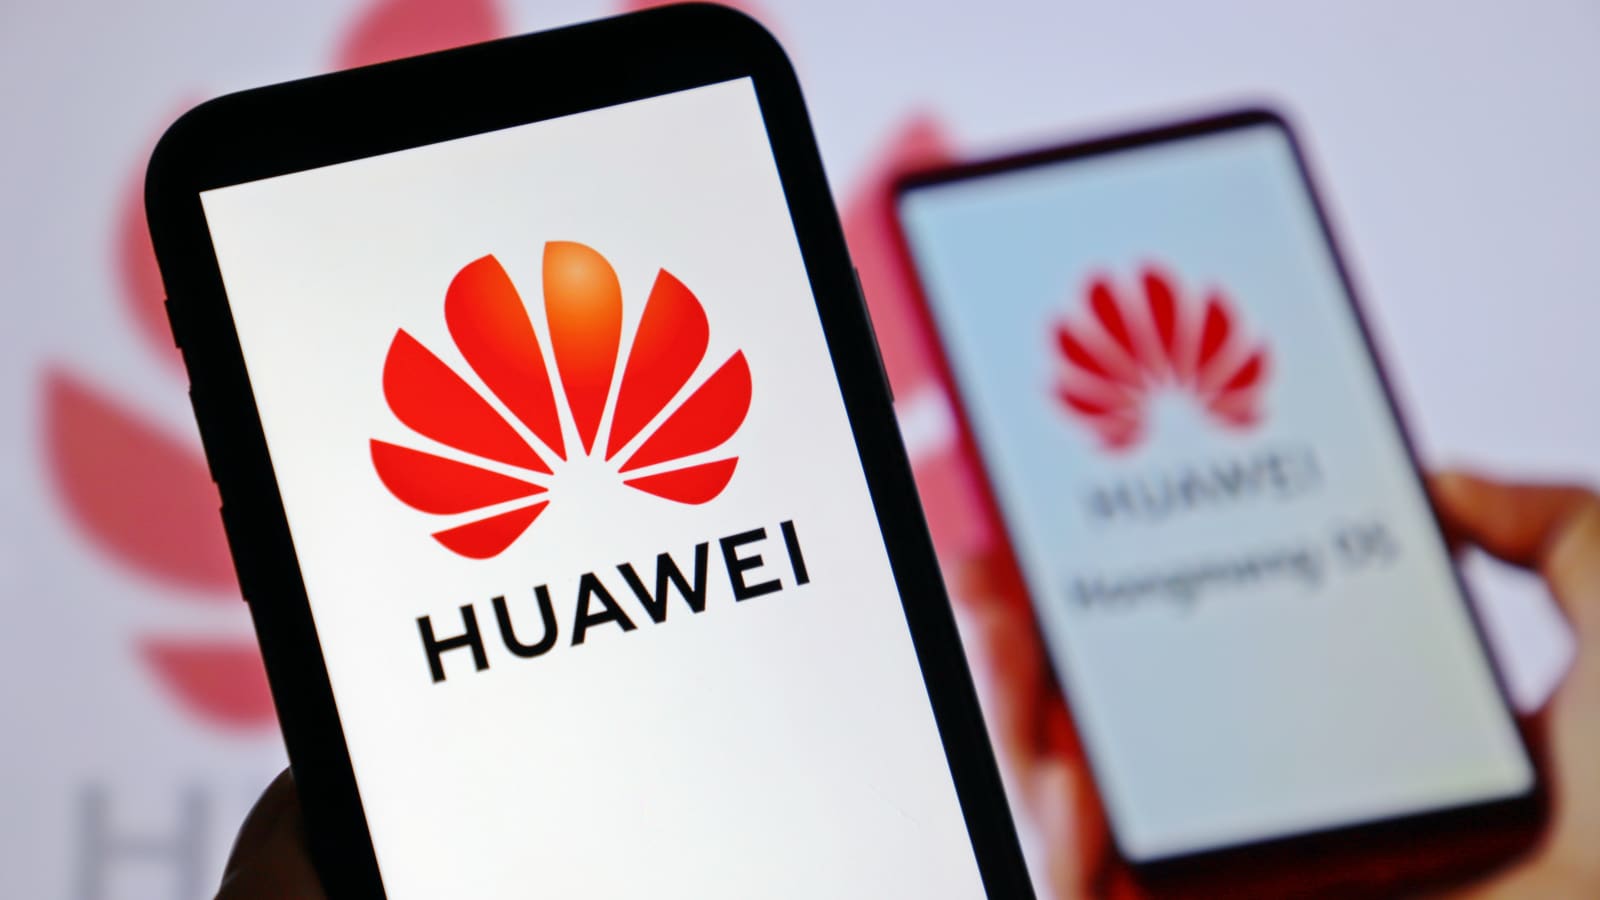 Sau Huawei, Mỹ xem xét đưa thêm 5 gã khổng lồ công nghệ Trung Quốc vào danh sách cấm